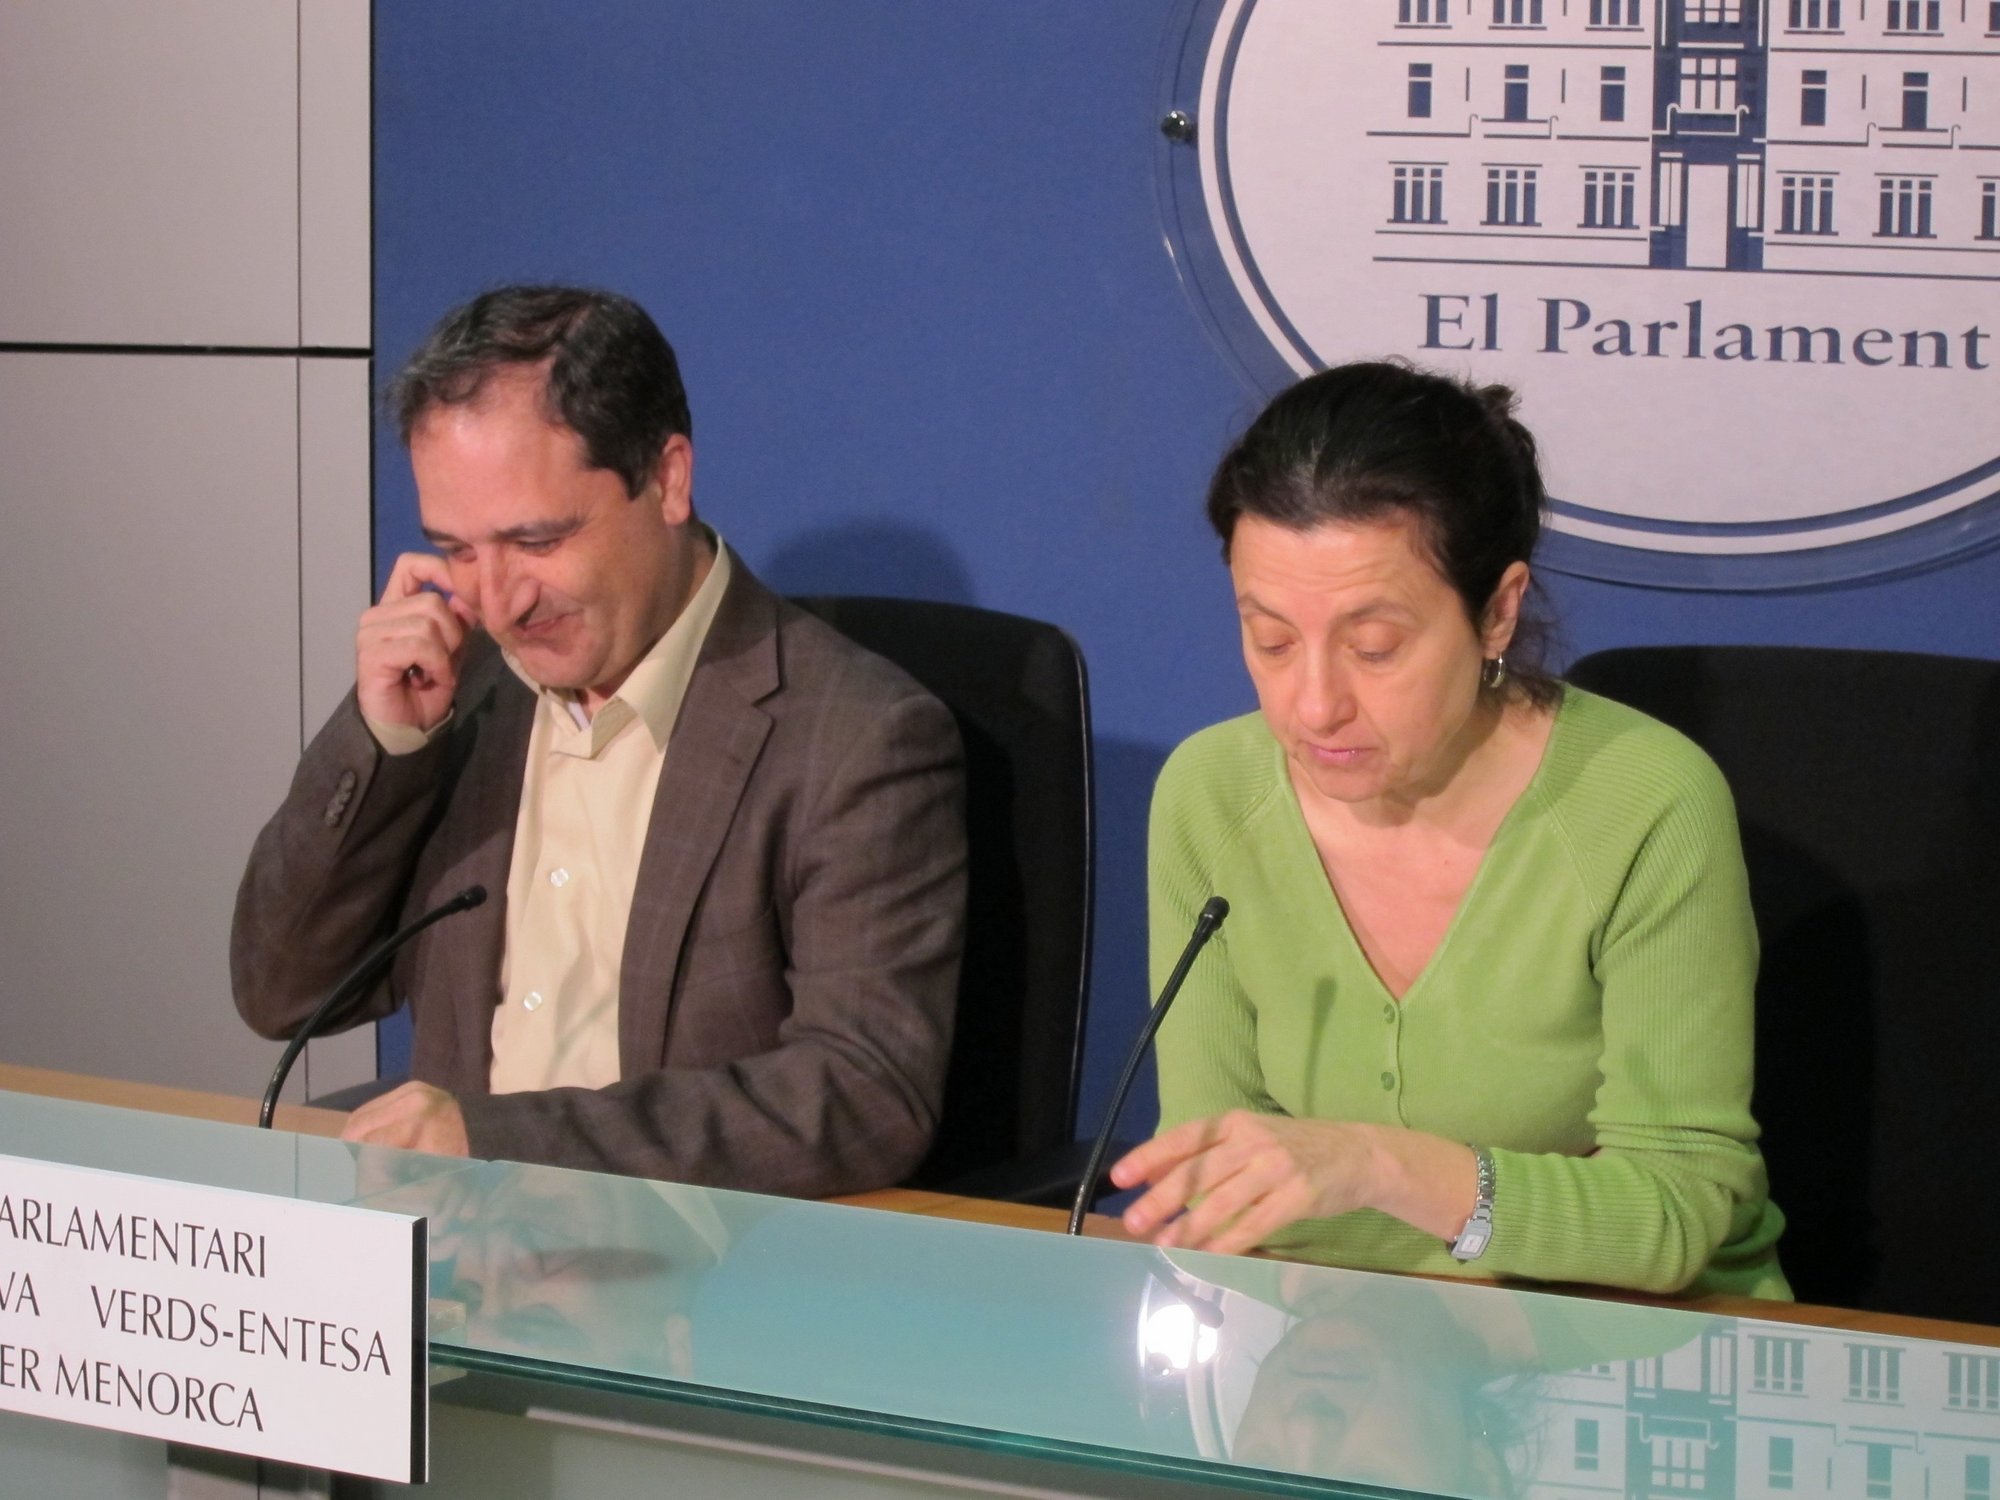 La presidenta del Parlamento Vasco afirma que hay que esforzarse para acercarse a los ciudadanos